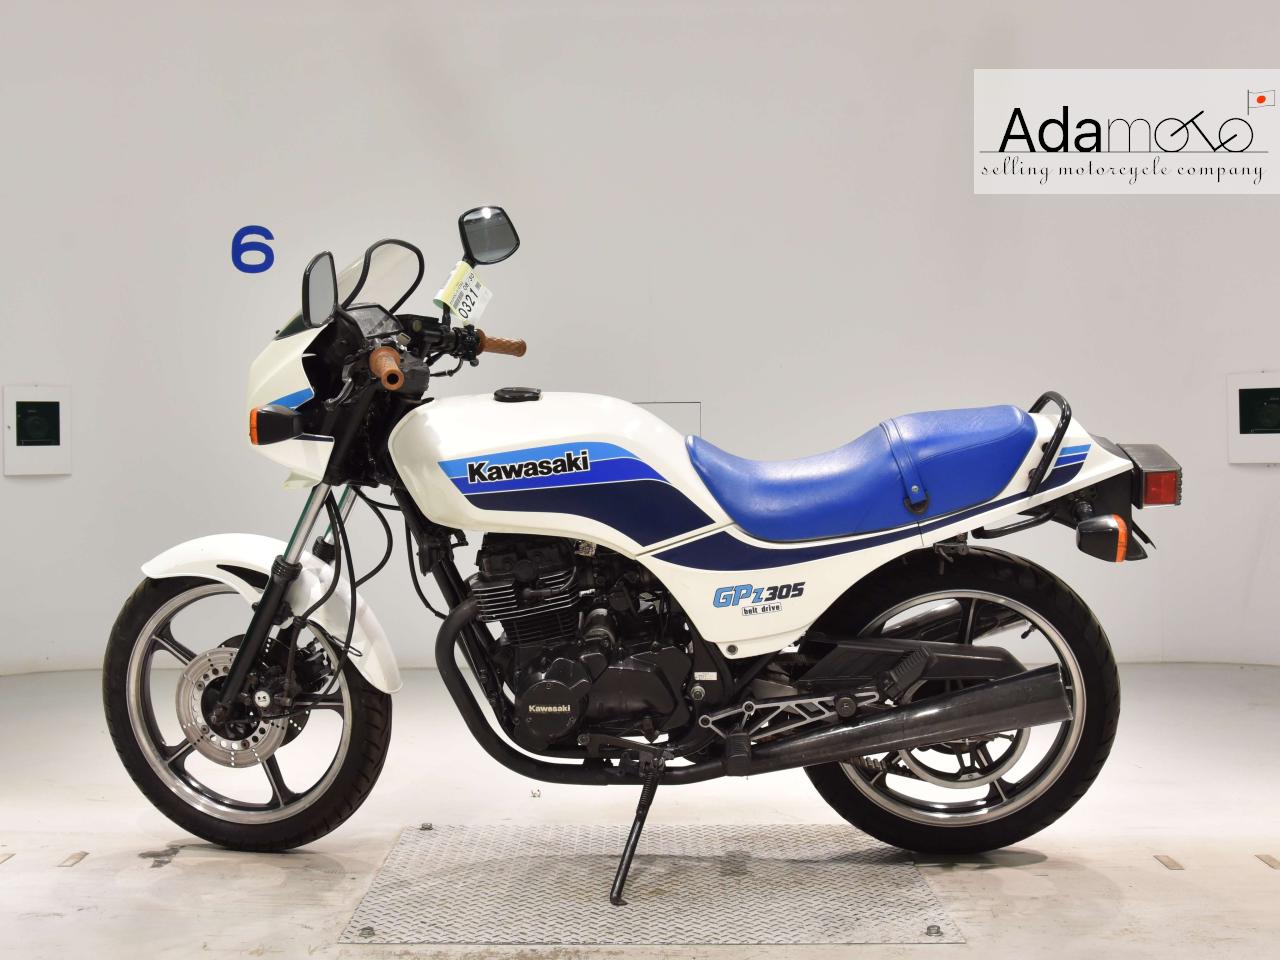 Kawasaki GPZ250 - Adamoto - Motorcycles from Japan